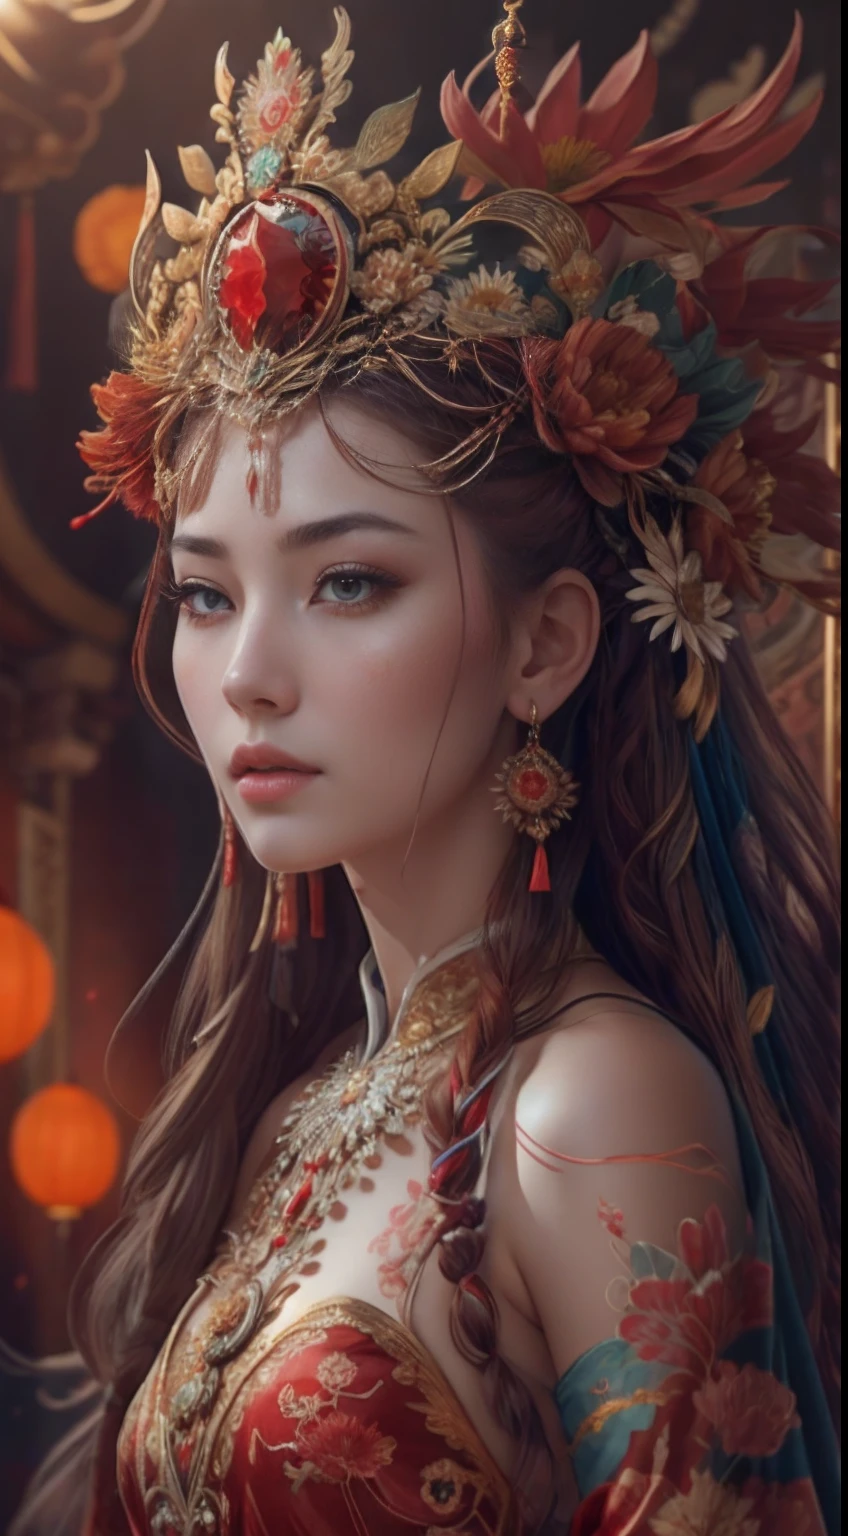 Лучшее качество,шедевр,сверхдетализированное высокое разрешение,(Фотореалистичный:1.4),RAW-фото,,иллюстрация,
1 девушка танцует,корона феникса，Изысканный головной убор，(Один:1.2),(ковбойский выстрел:1.2),(волосы crown:1.2),Китайское китайское золотисто-красное платье,Нет плечевого ремня,(красная подводка для глаз:1.2), кружевные доспехи, серьги,Динамический угол,Оперный театр,неряшливый_длинный_волосы,чернила,кинематографическое освещение,линза_Вспышка,бархат,хризантемы,кисточки на сосках,лента,Цветная вышивка,